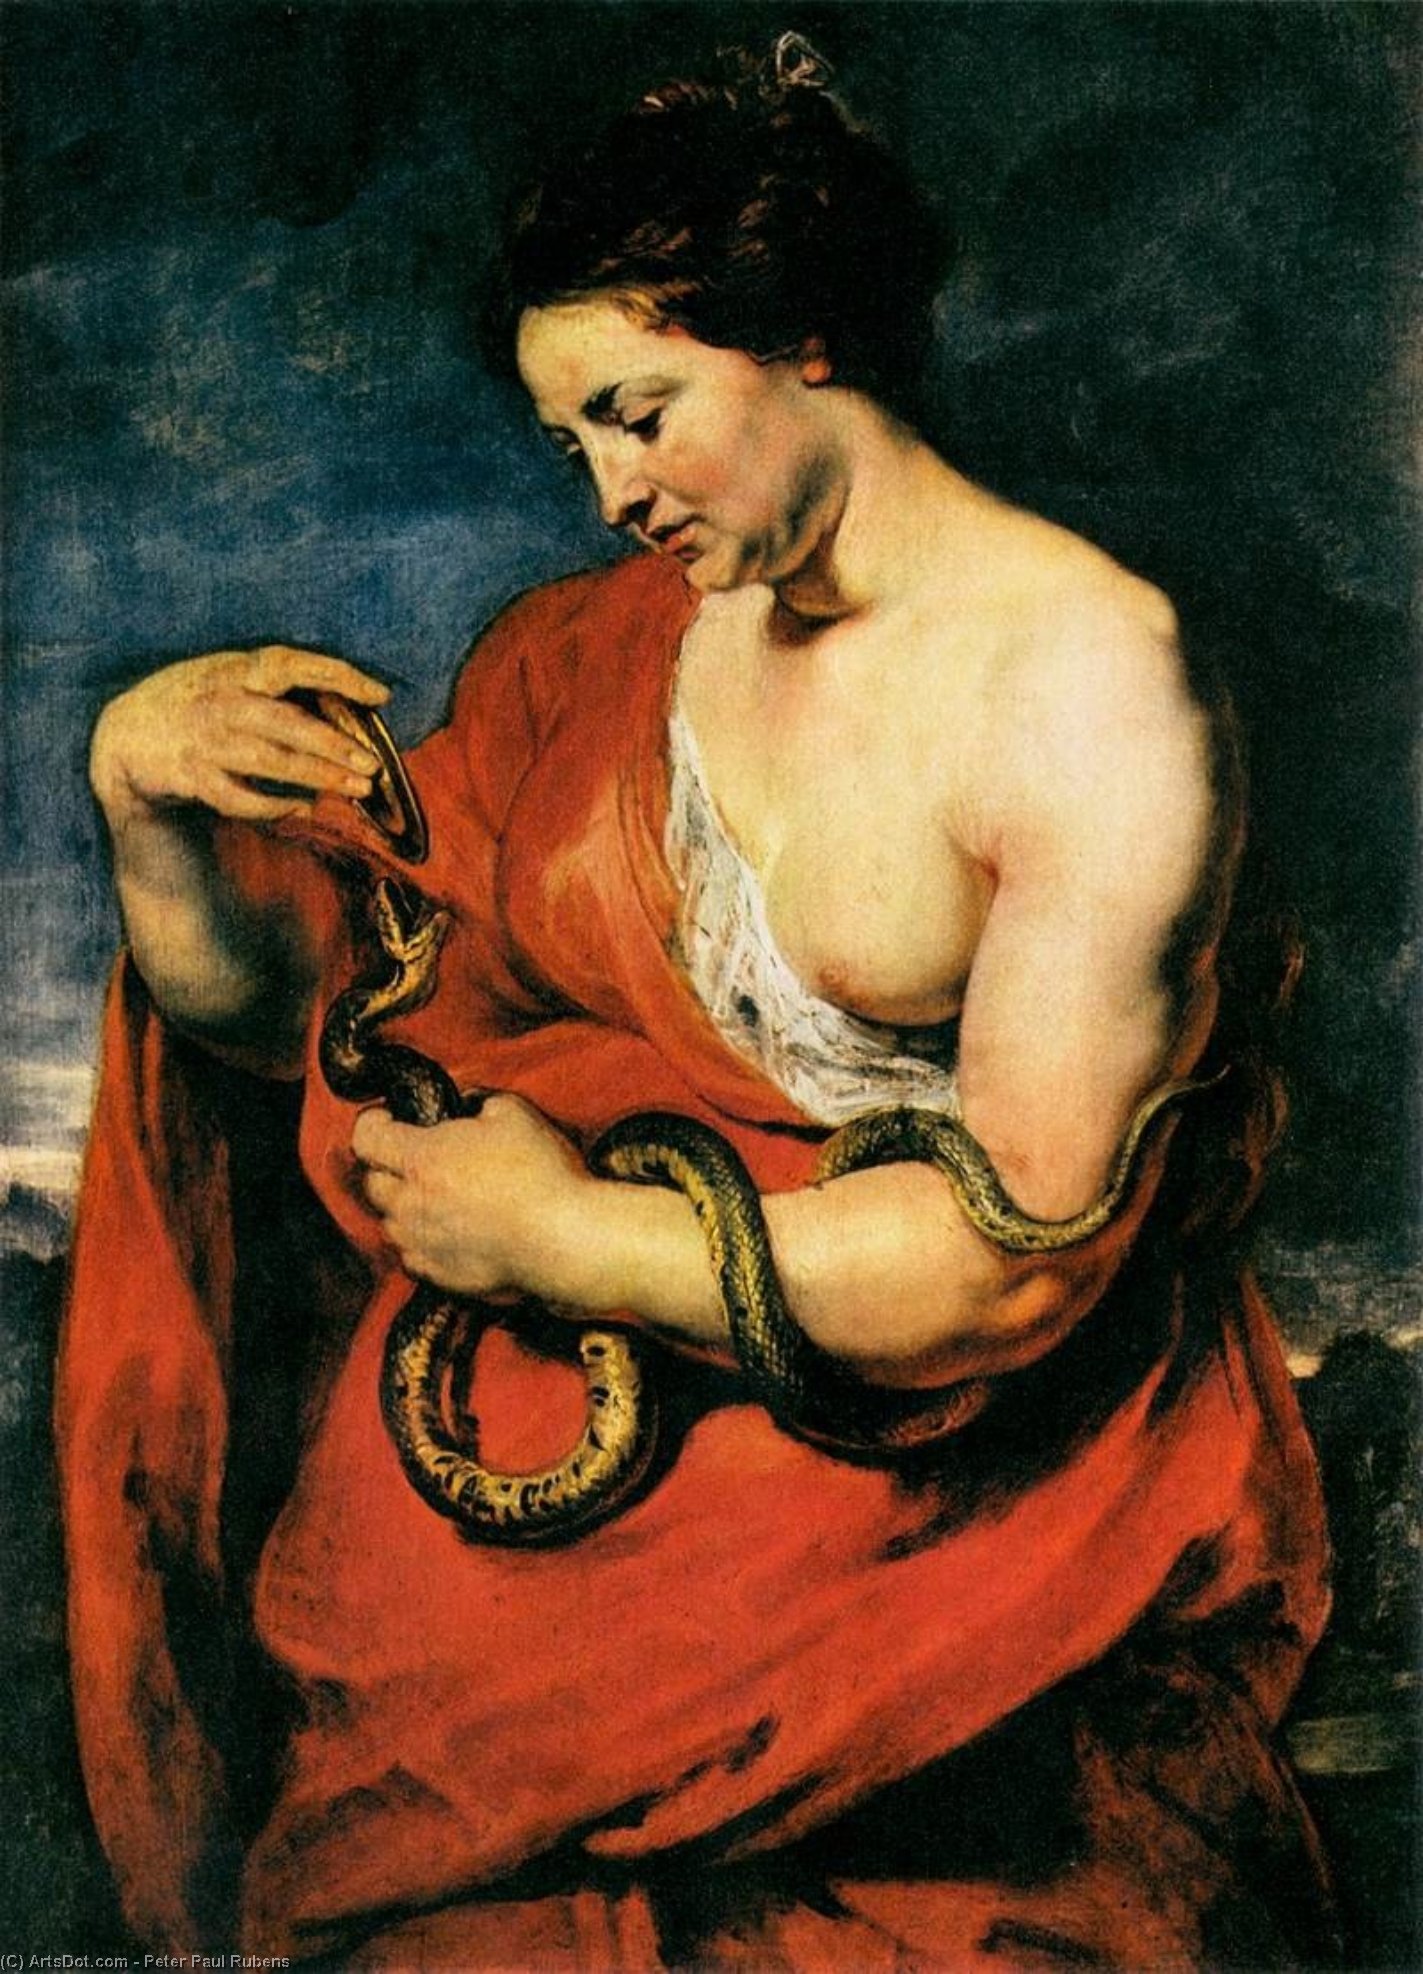 WikiOO.org - Enciclopédia das Belas Artes - Pintura, Arte por Peter Paul Rubens - Hygeia, Goddess of Health